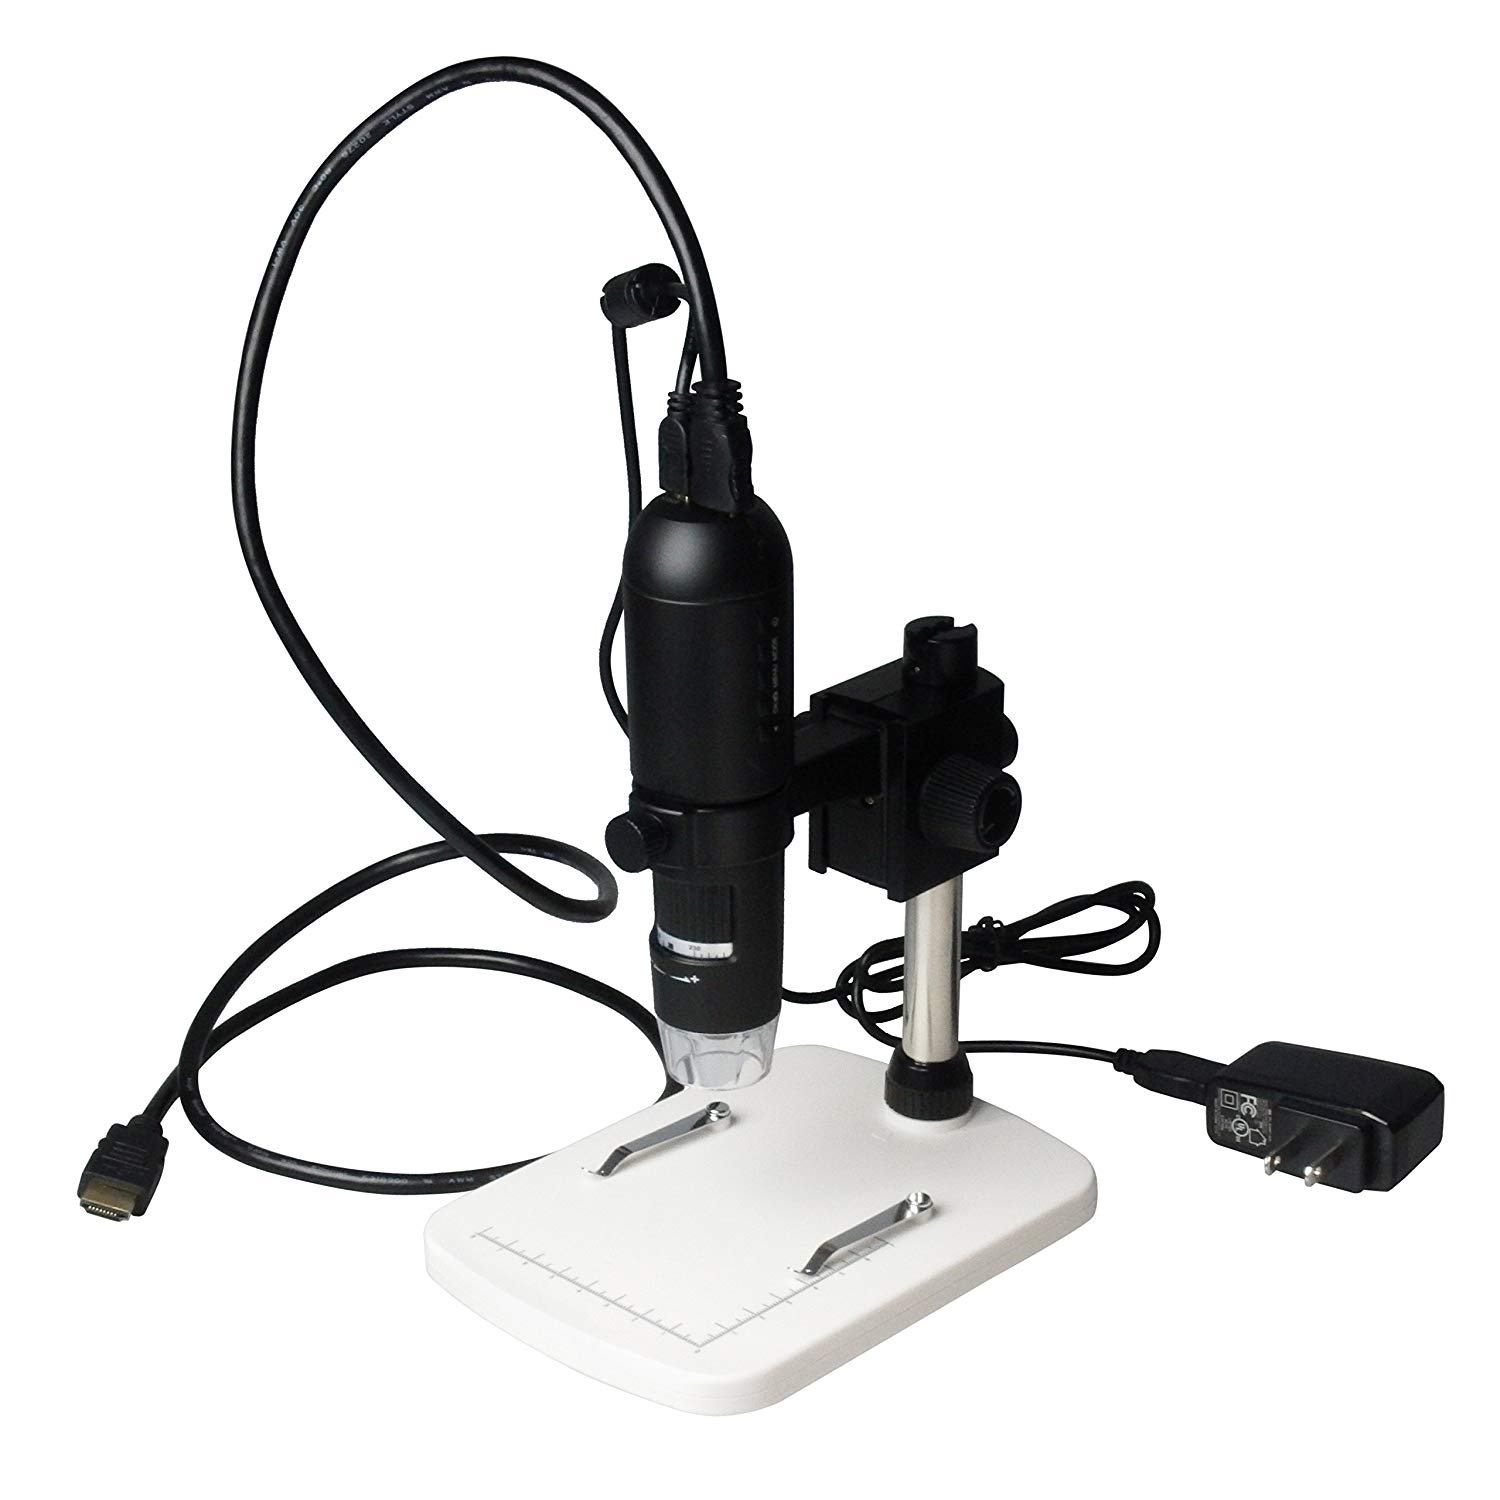 デジタル顕微鏡 USB(2.0)接続 450~600× /2-392-04-www.malaikagroup.com